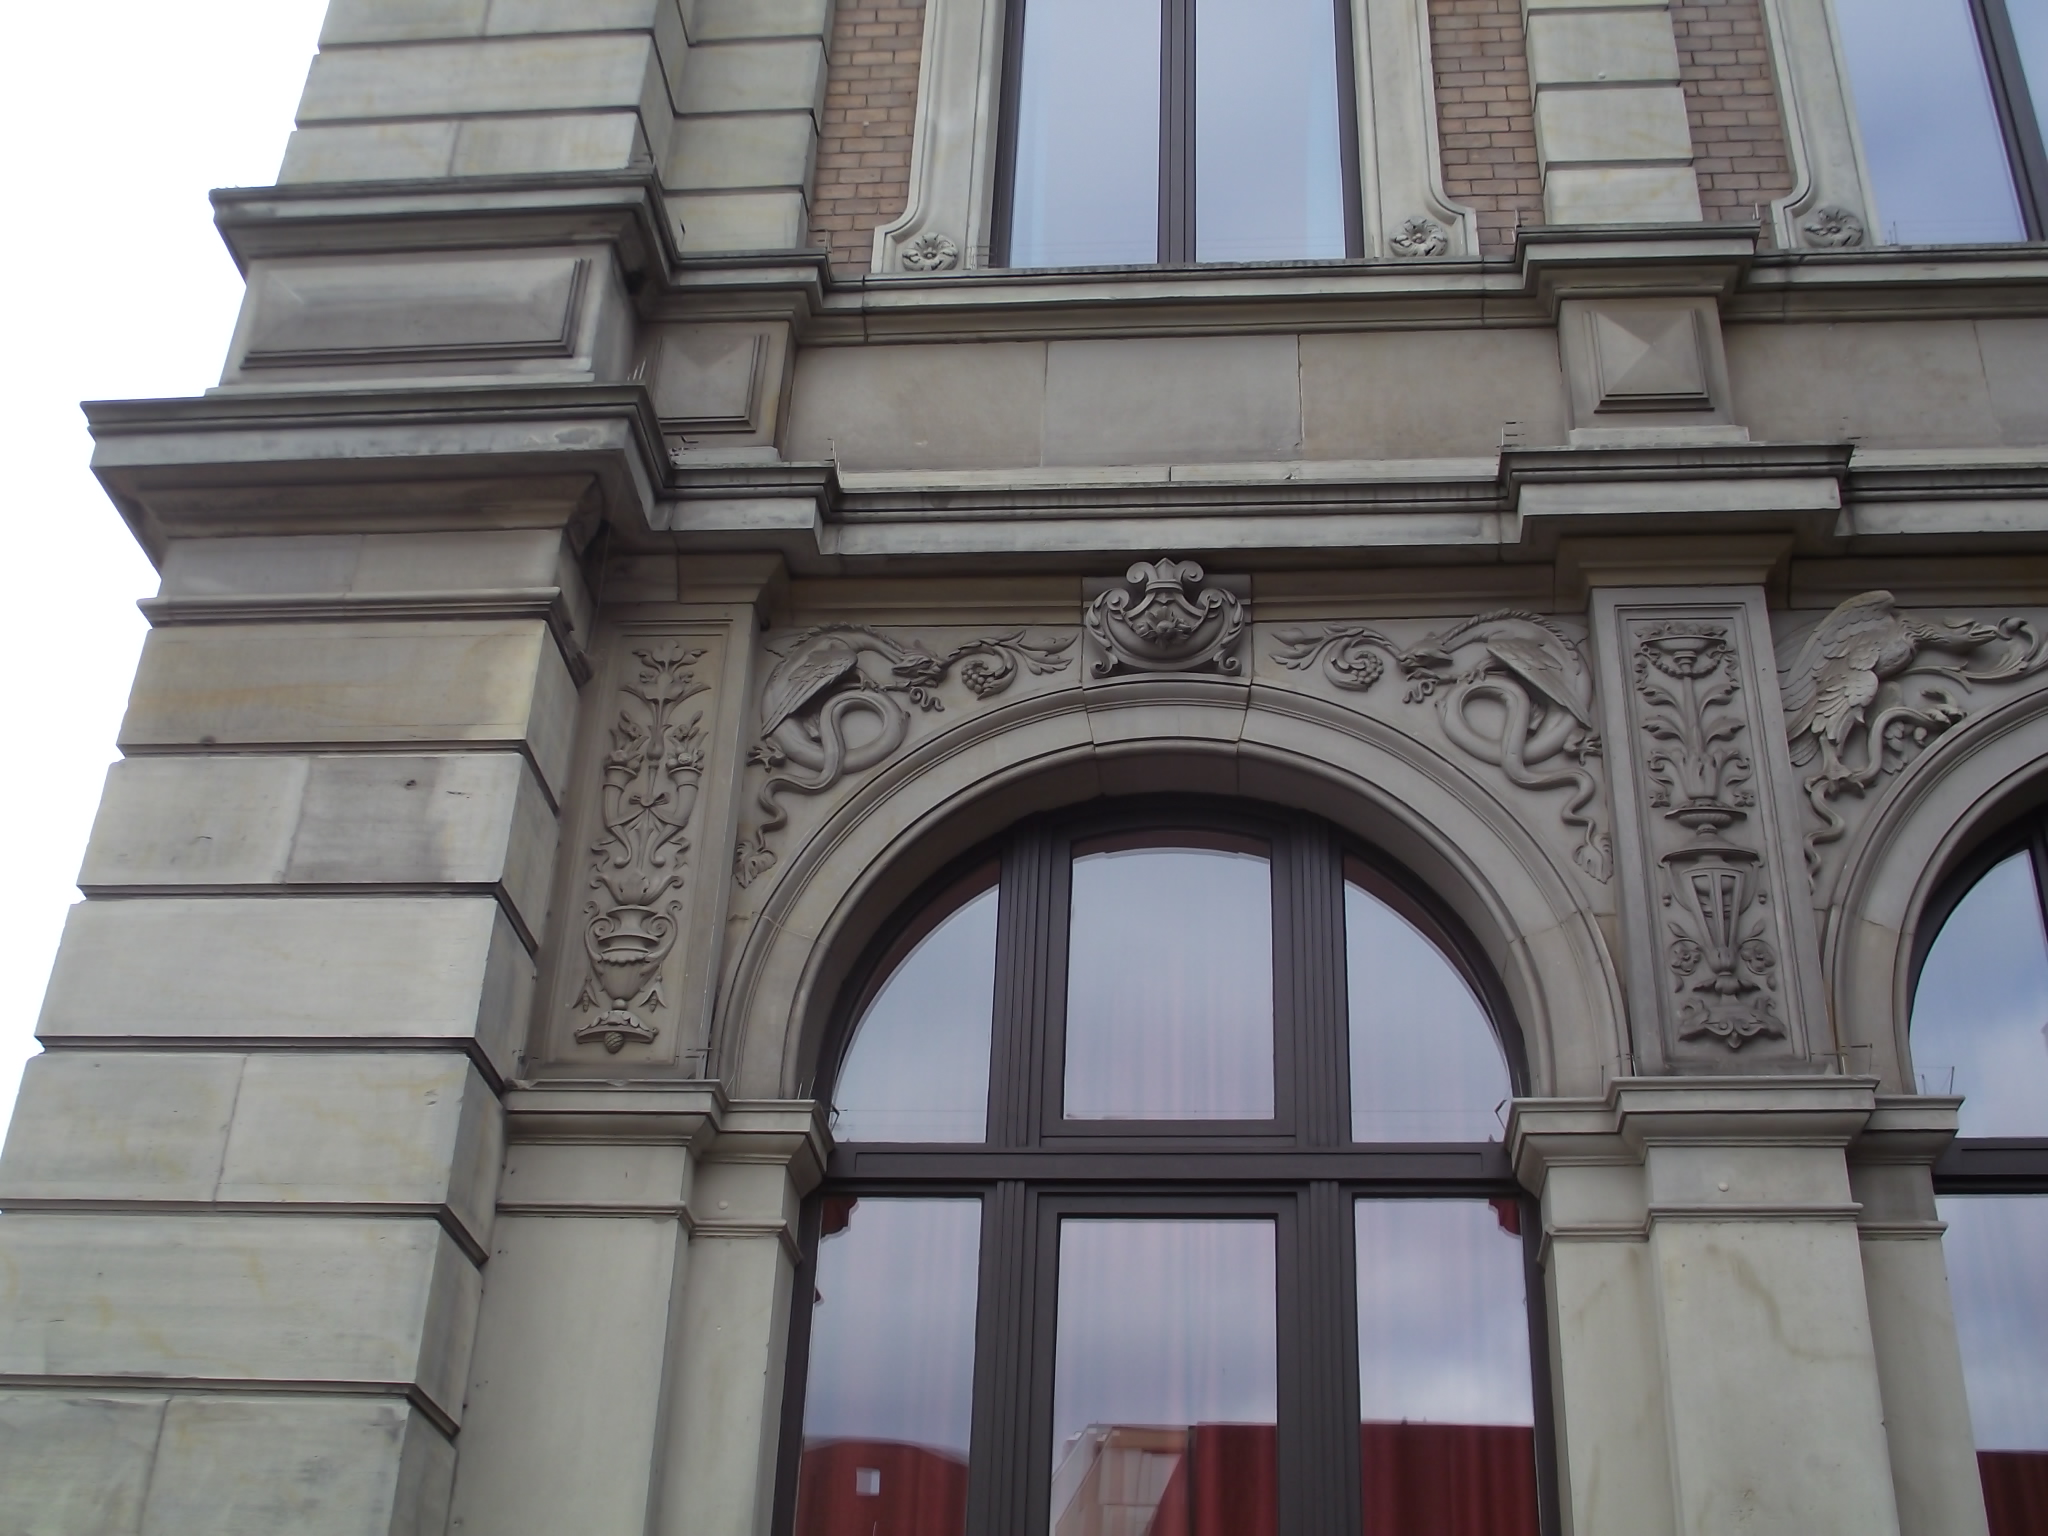 Die alte Hauptpoststelle von 1878 an der Domsheide in Bremen - jeder Bogen ist anders verziert